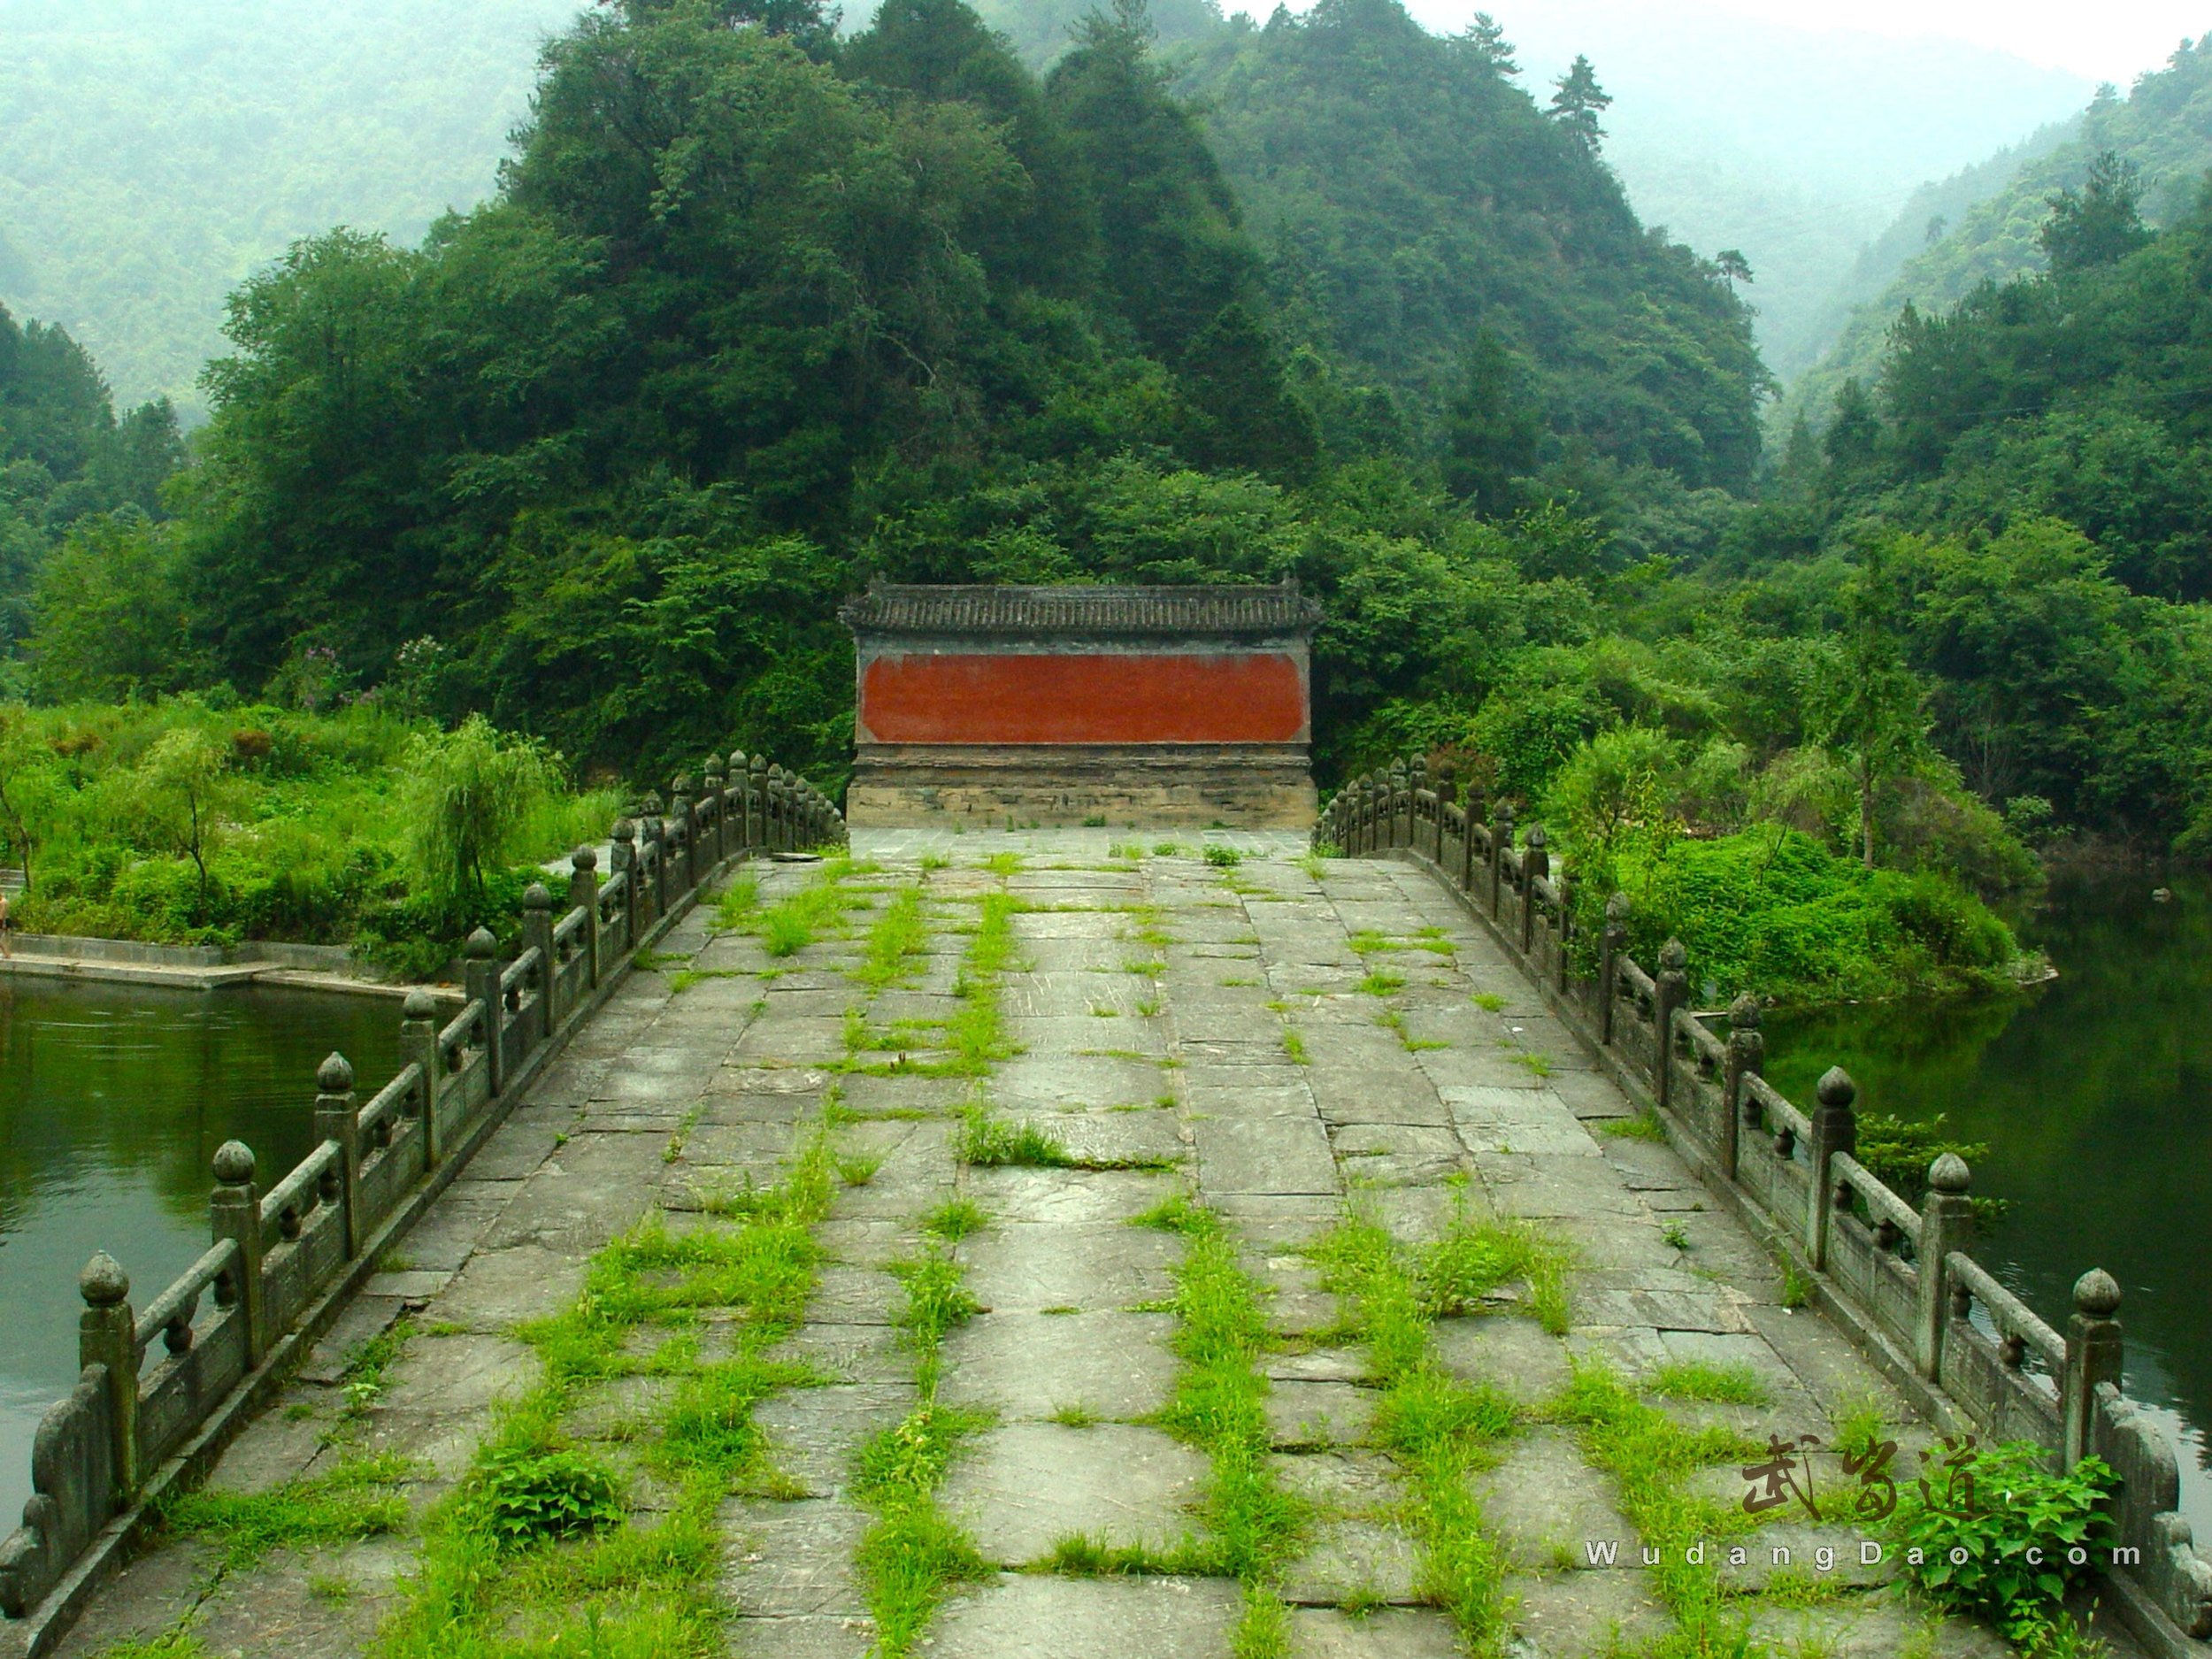 Wudang-sword-river-bridge2.jpg